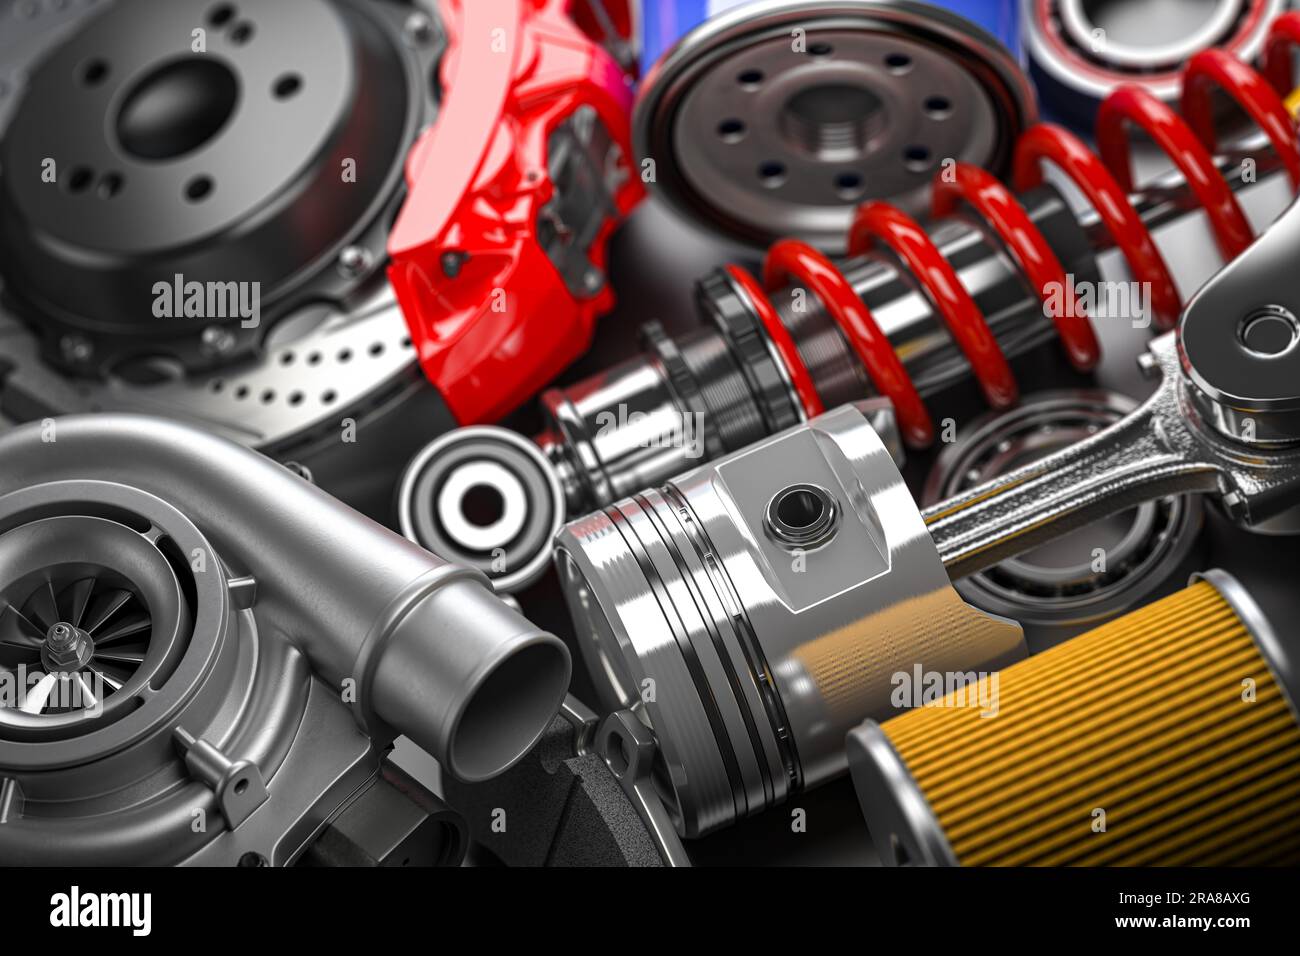 401,553 Auto Parts Images, Stock Photos, 3D objects, & Vectors